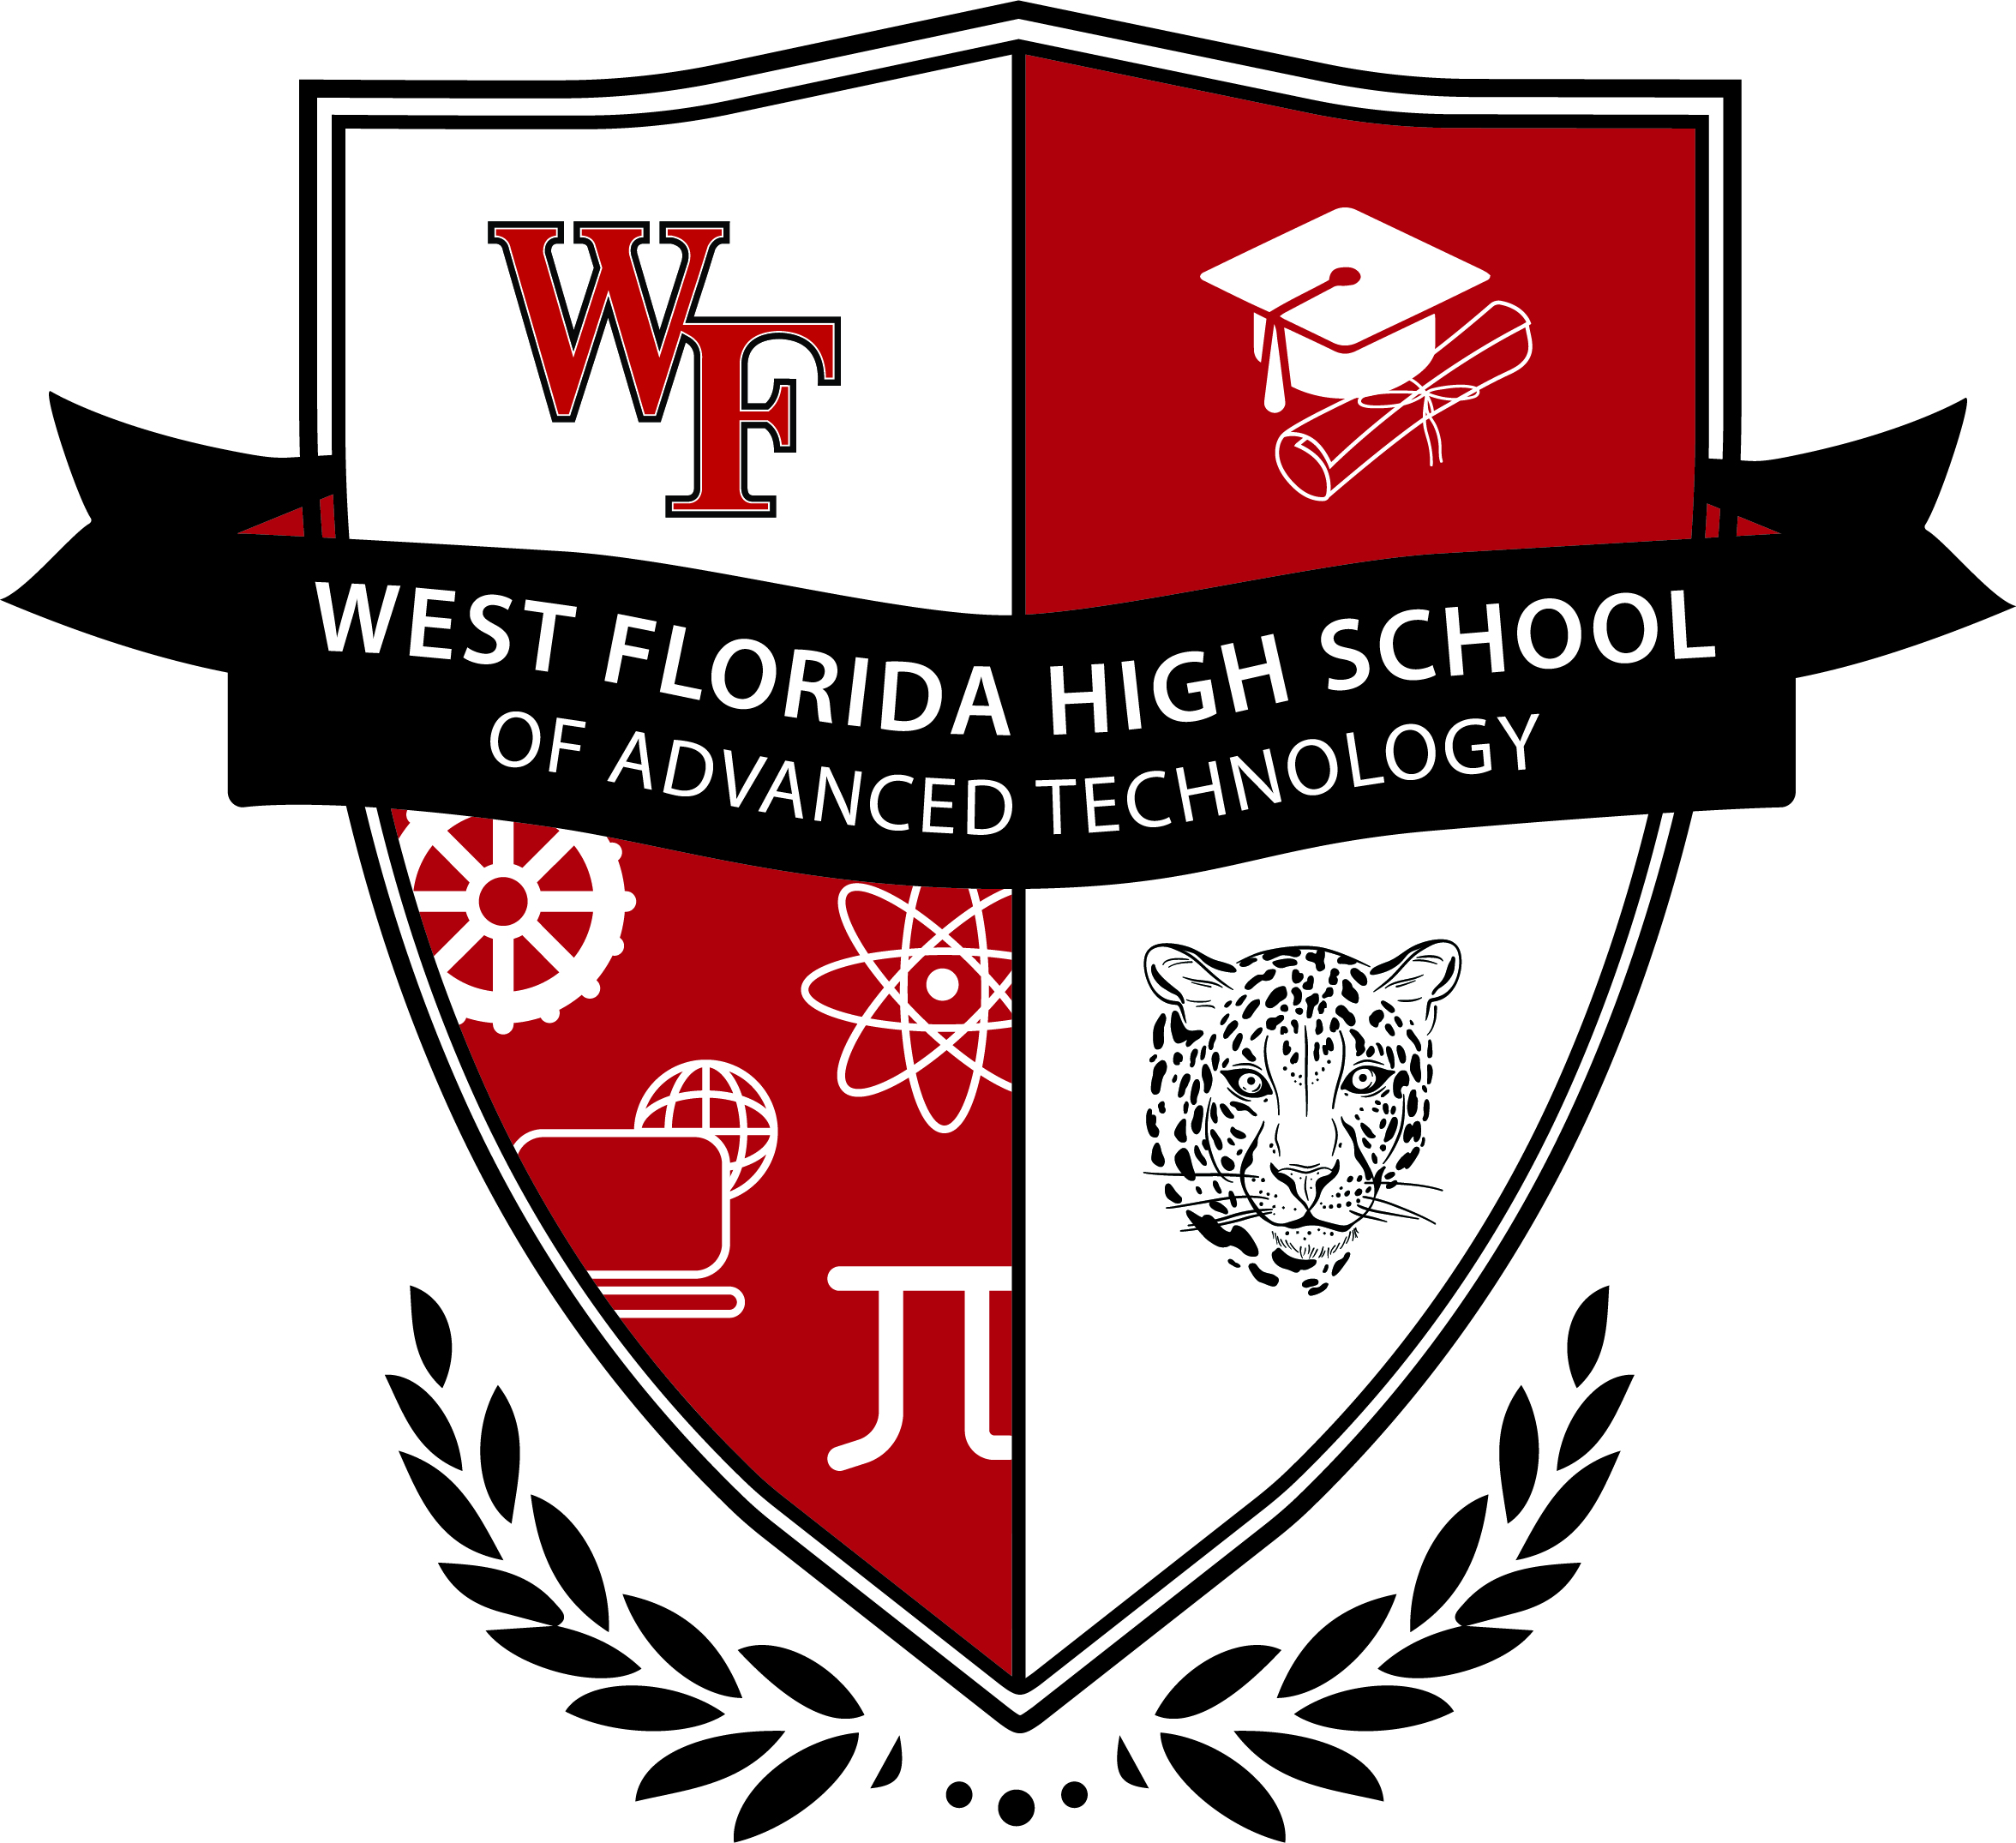 West Florida High School